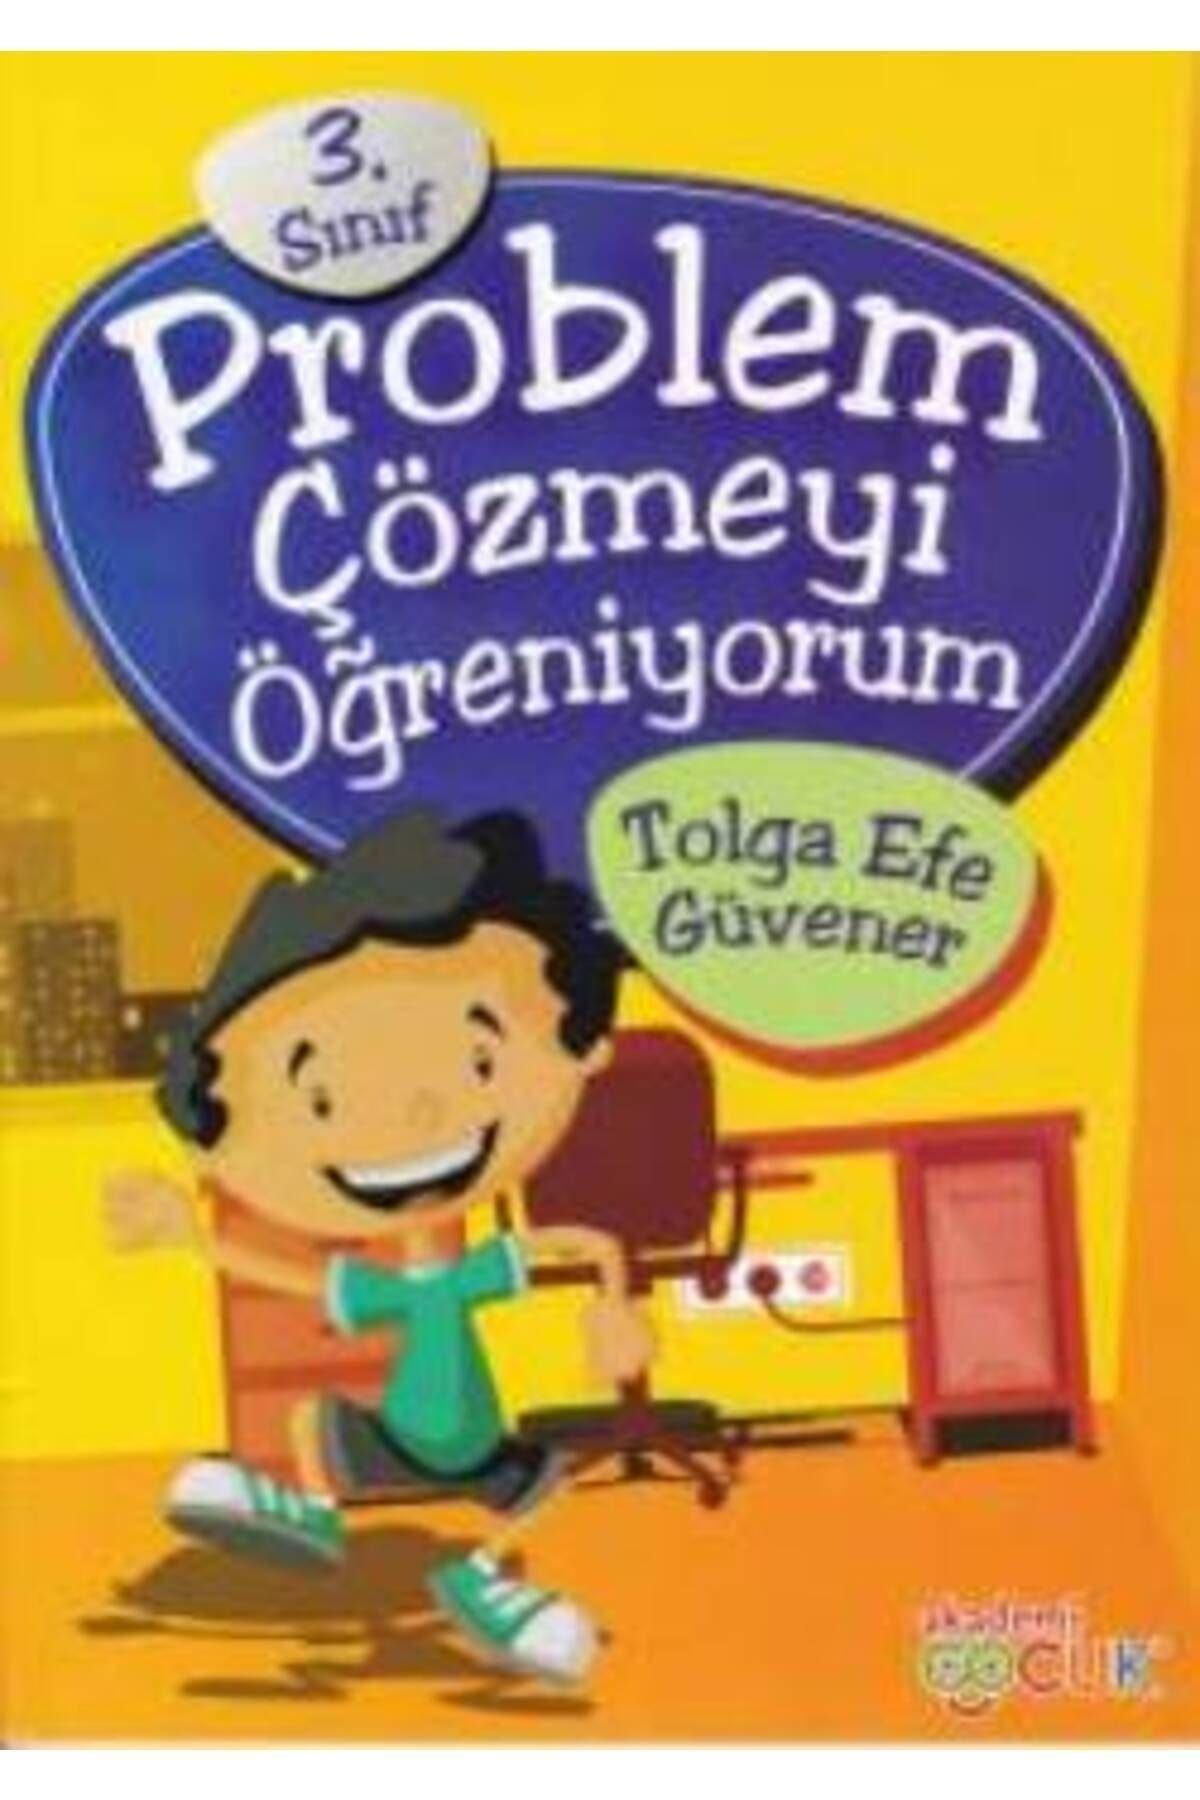 Akademi Çocuk 3. Sınıf Problem Çözmeyi Öğreniyorum kitabı - Tolga Efe Güvener - Akademi Çocuk